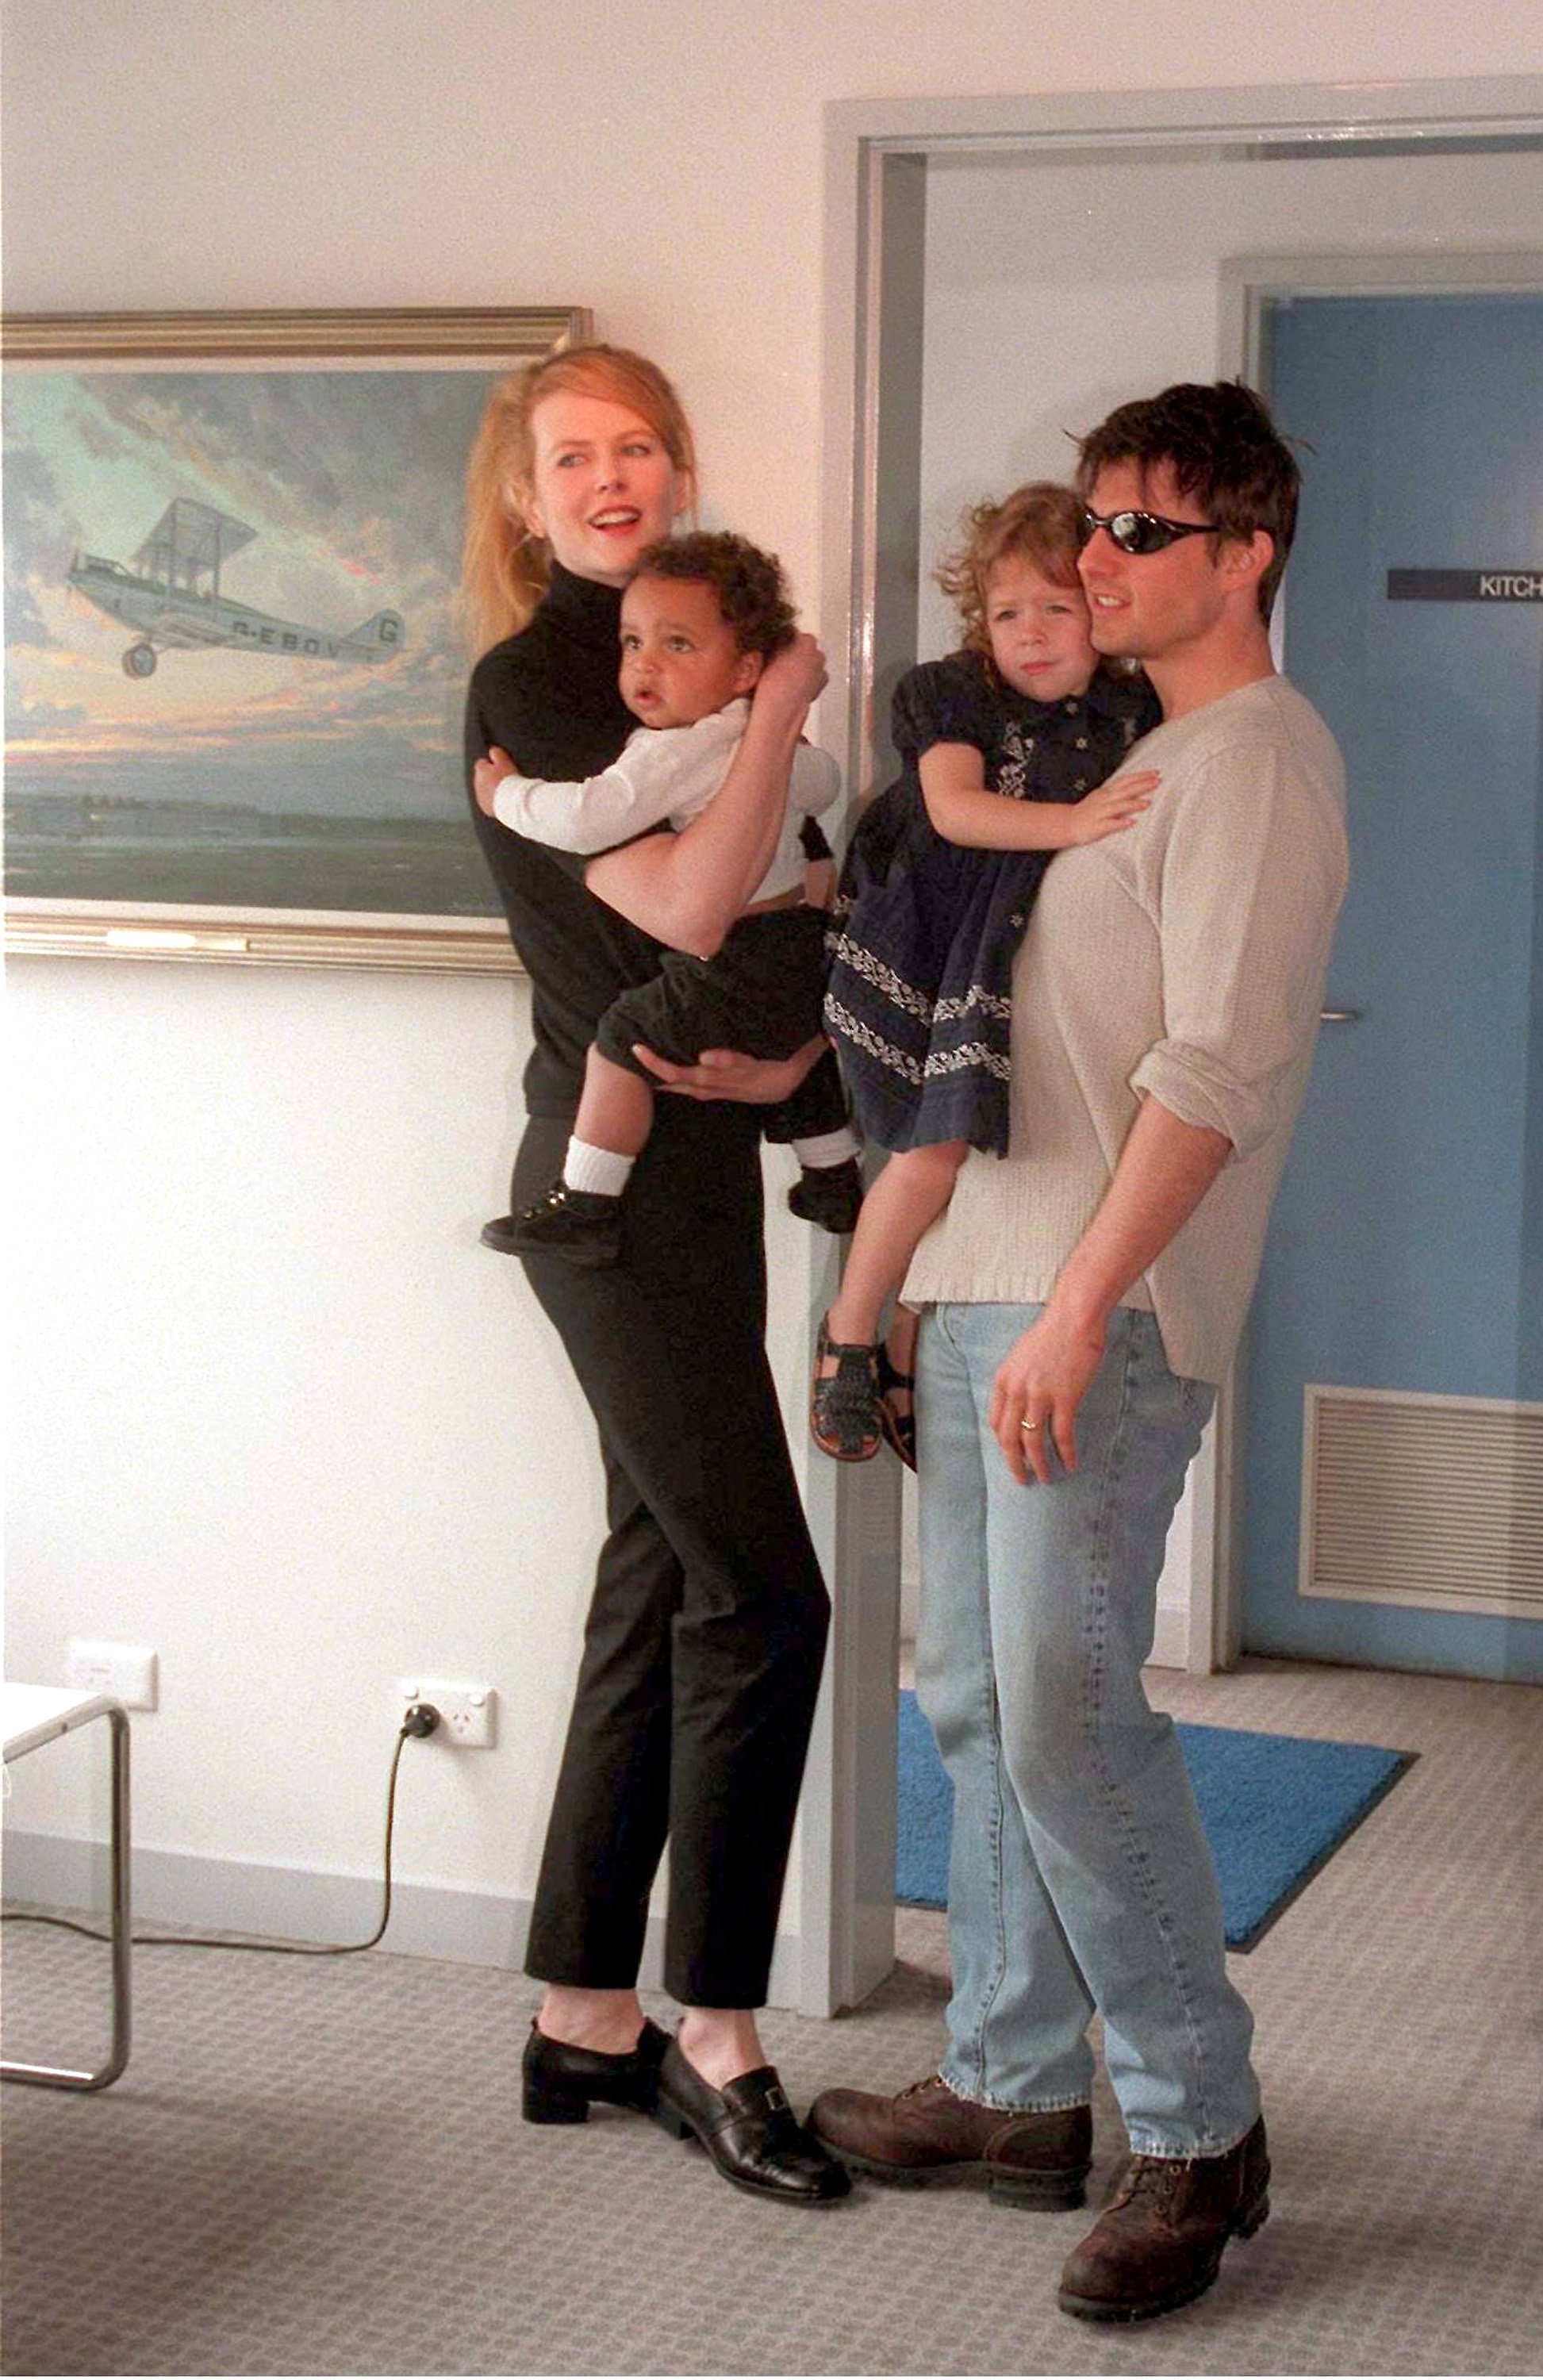 Nicole Kidman y Tom Cruise en el aeropuerto Sydney Kingsford Smith para presentar a sus hijos Connor e Isabella a la prensa el 24 de enero de 1996, en Sydney, Australia. | Foto: Getty Images